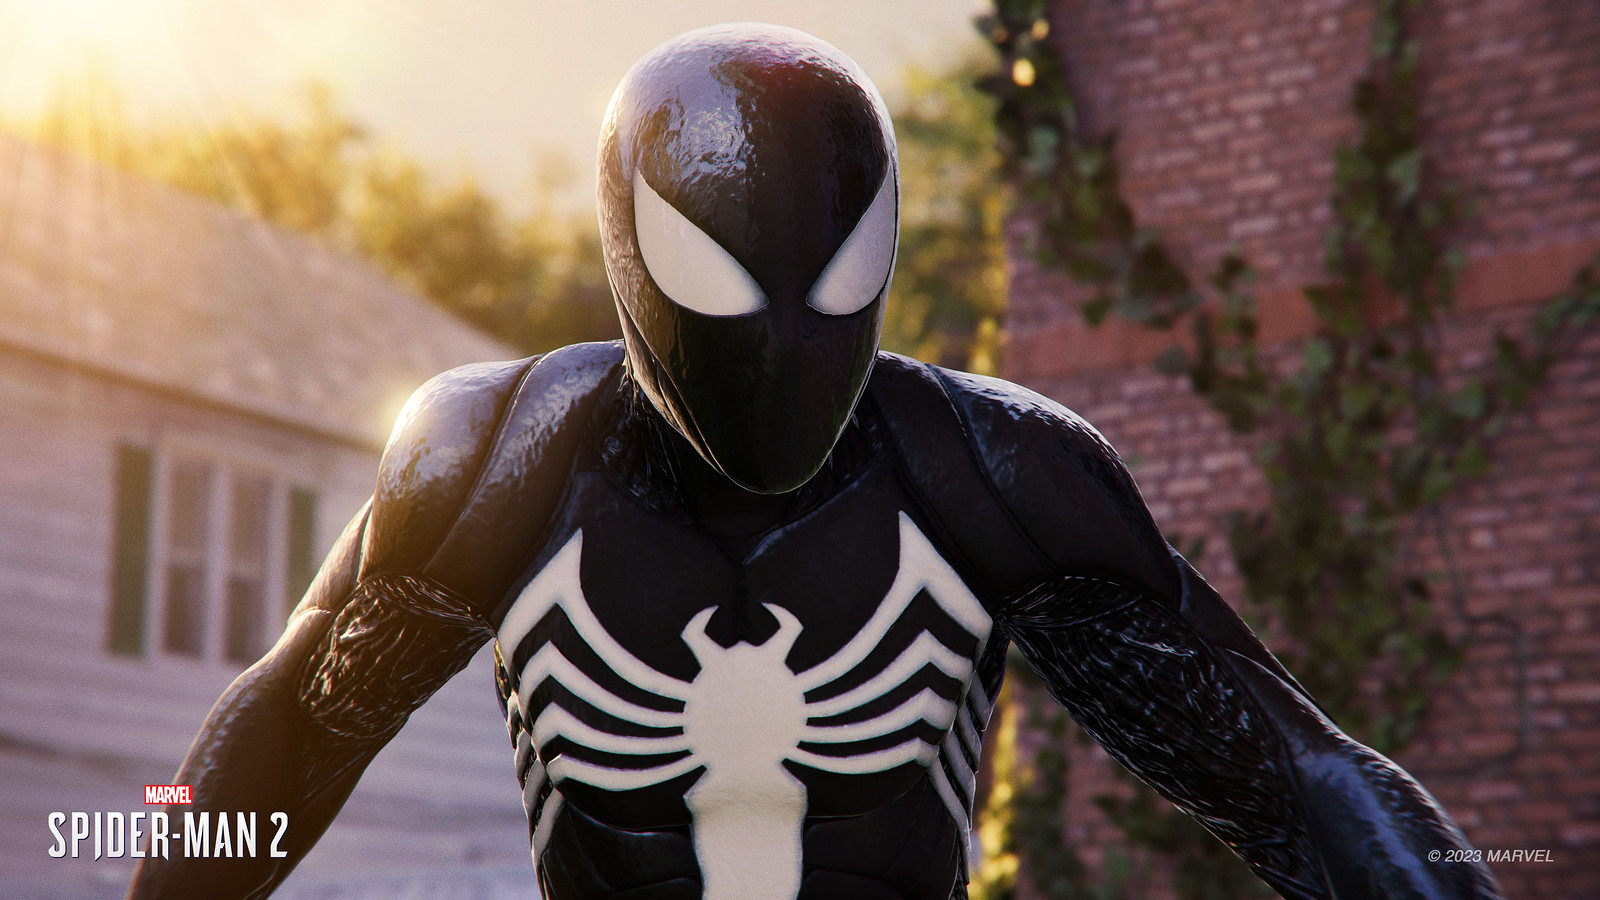 Marvel's Spider-Man 2: videoconfronto con Marvel's Spider-Man mostra un dettaglio molto maggiore